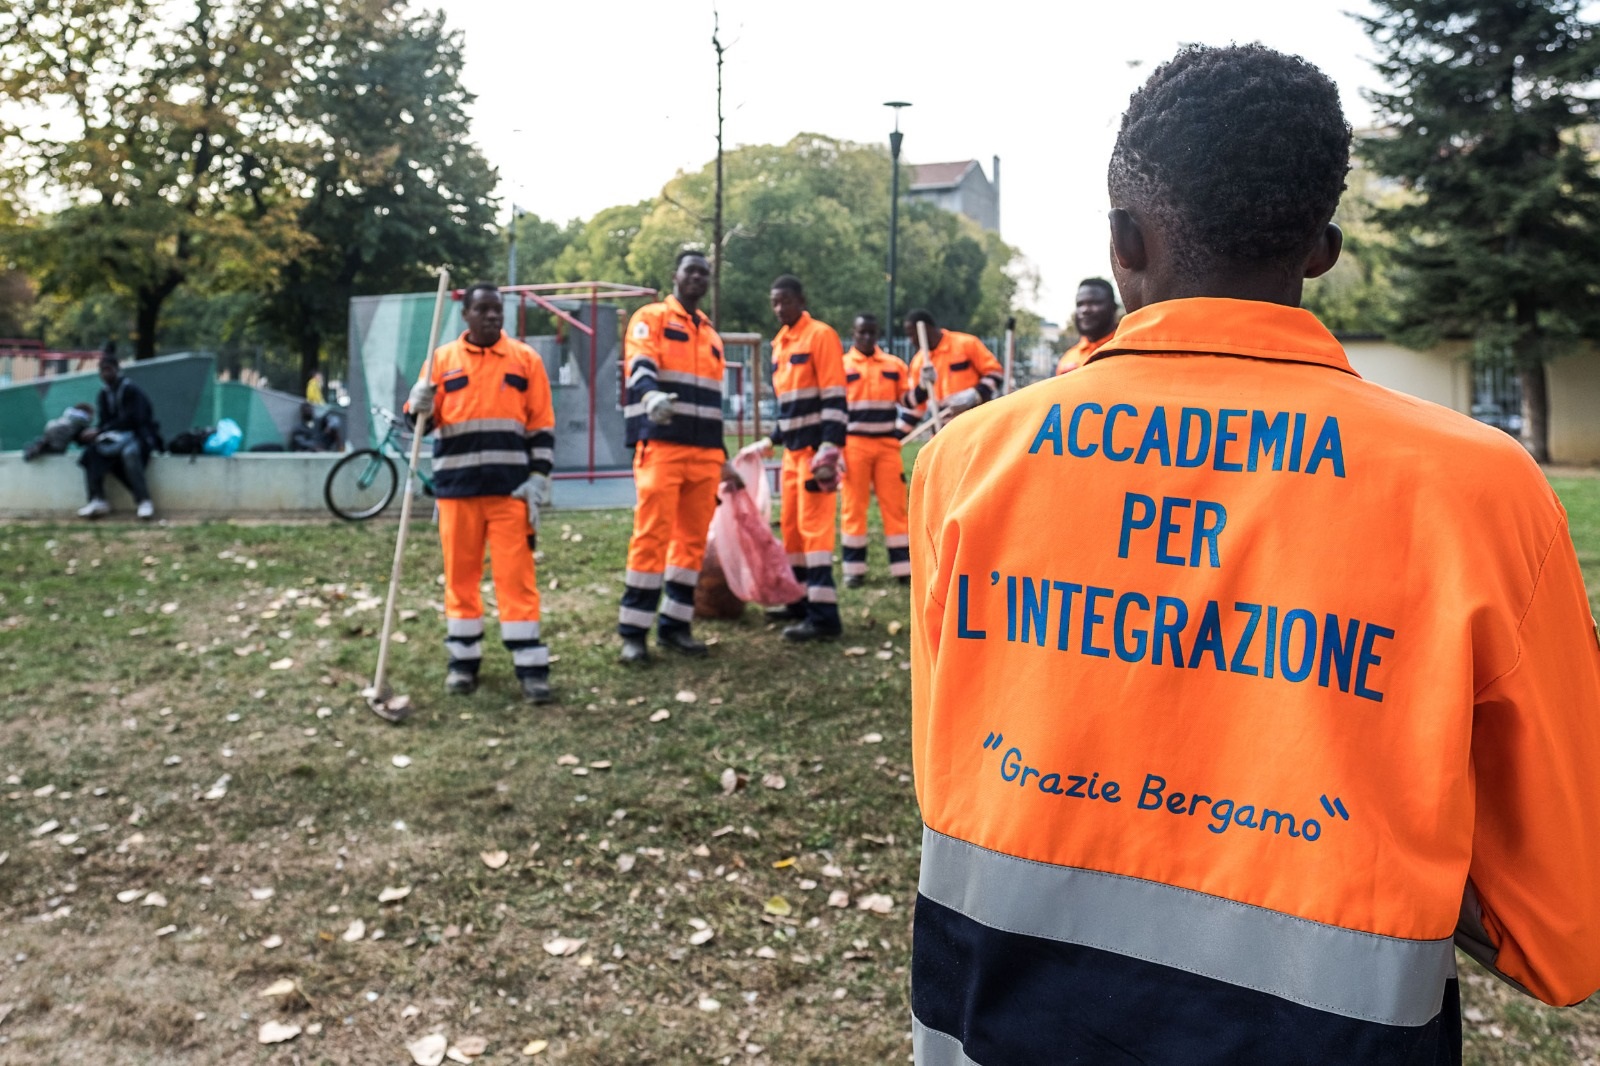 Accademia per l'integrazione, Bergamo